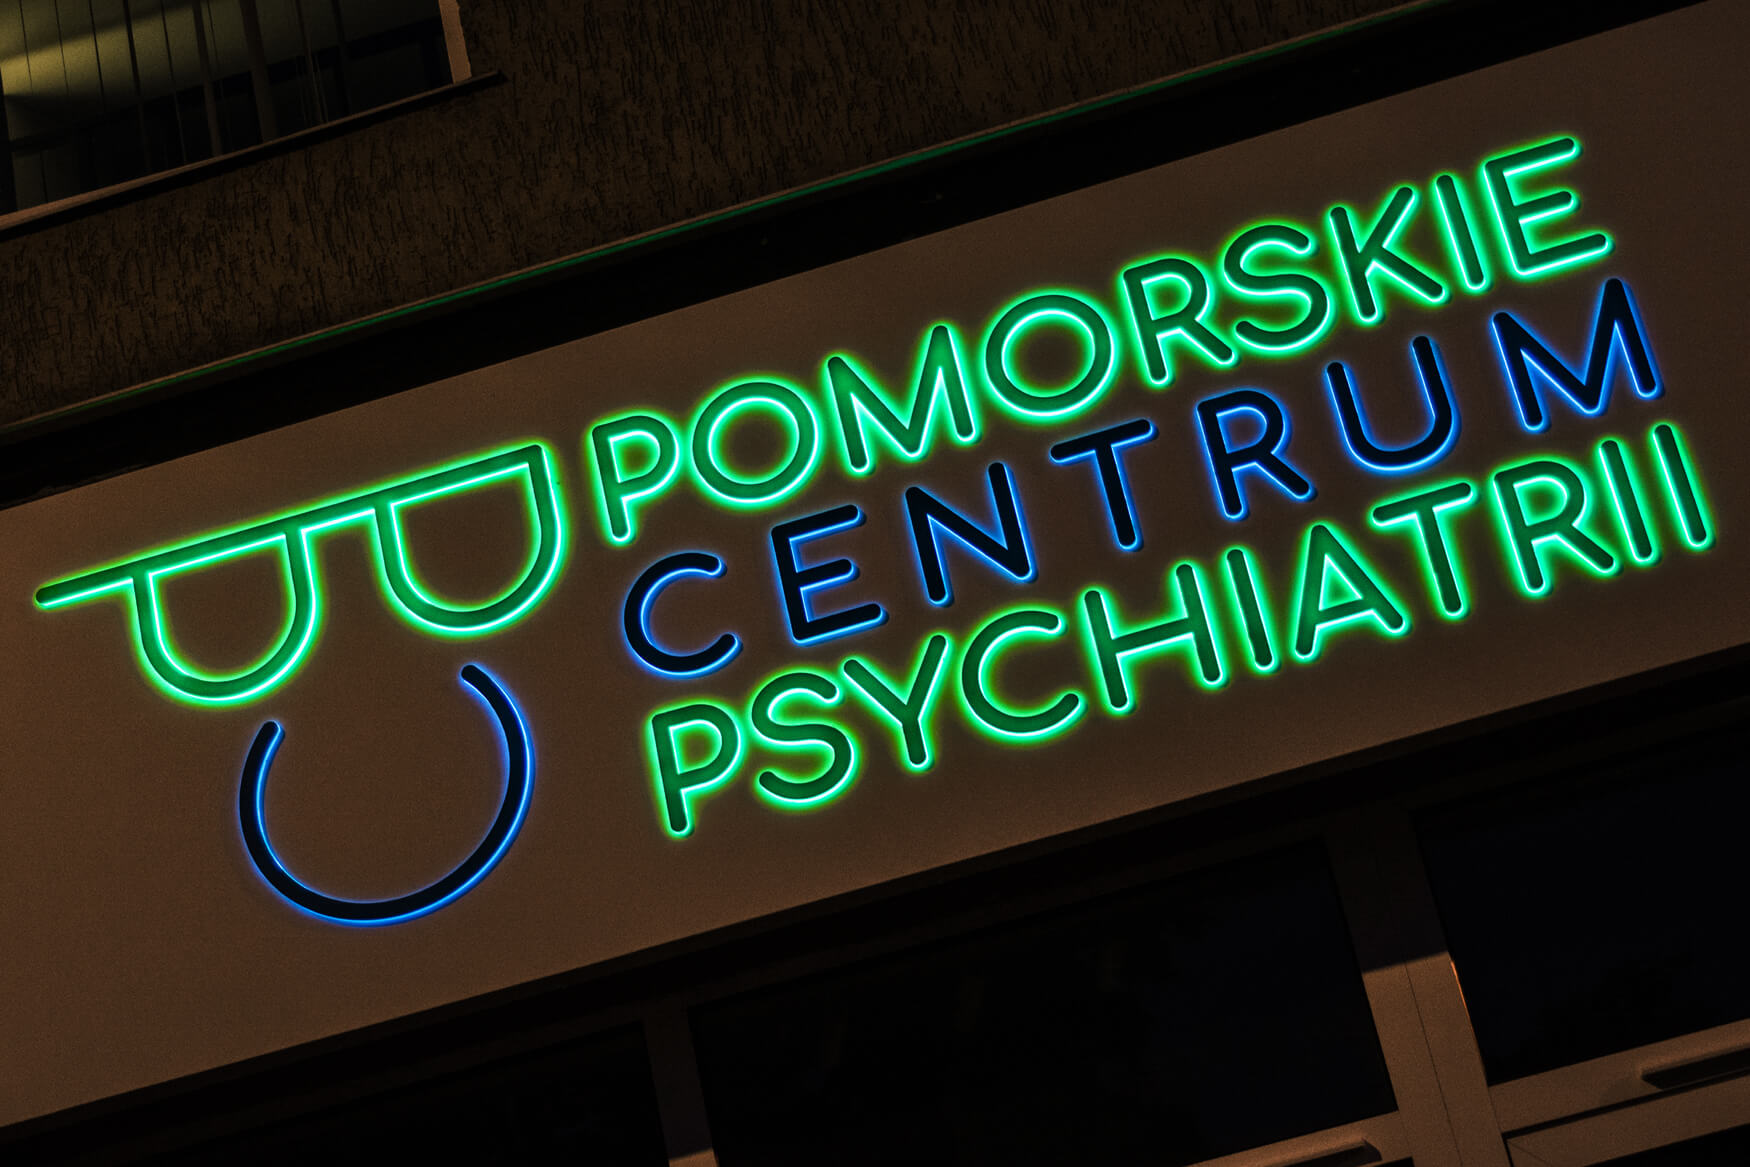 pomorskie centrum psychiatri - Pomorskie Centrum Psychiatrii - kaseton reklamowy z dibondu umieszczony nad wejściem